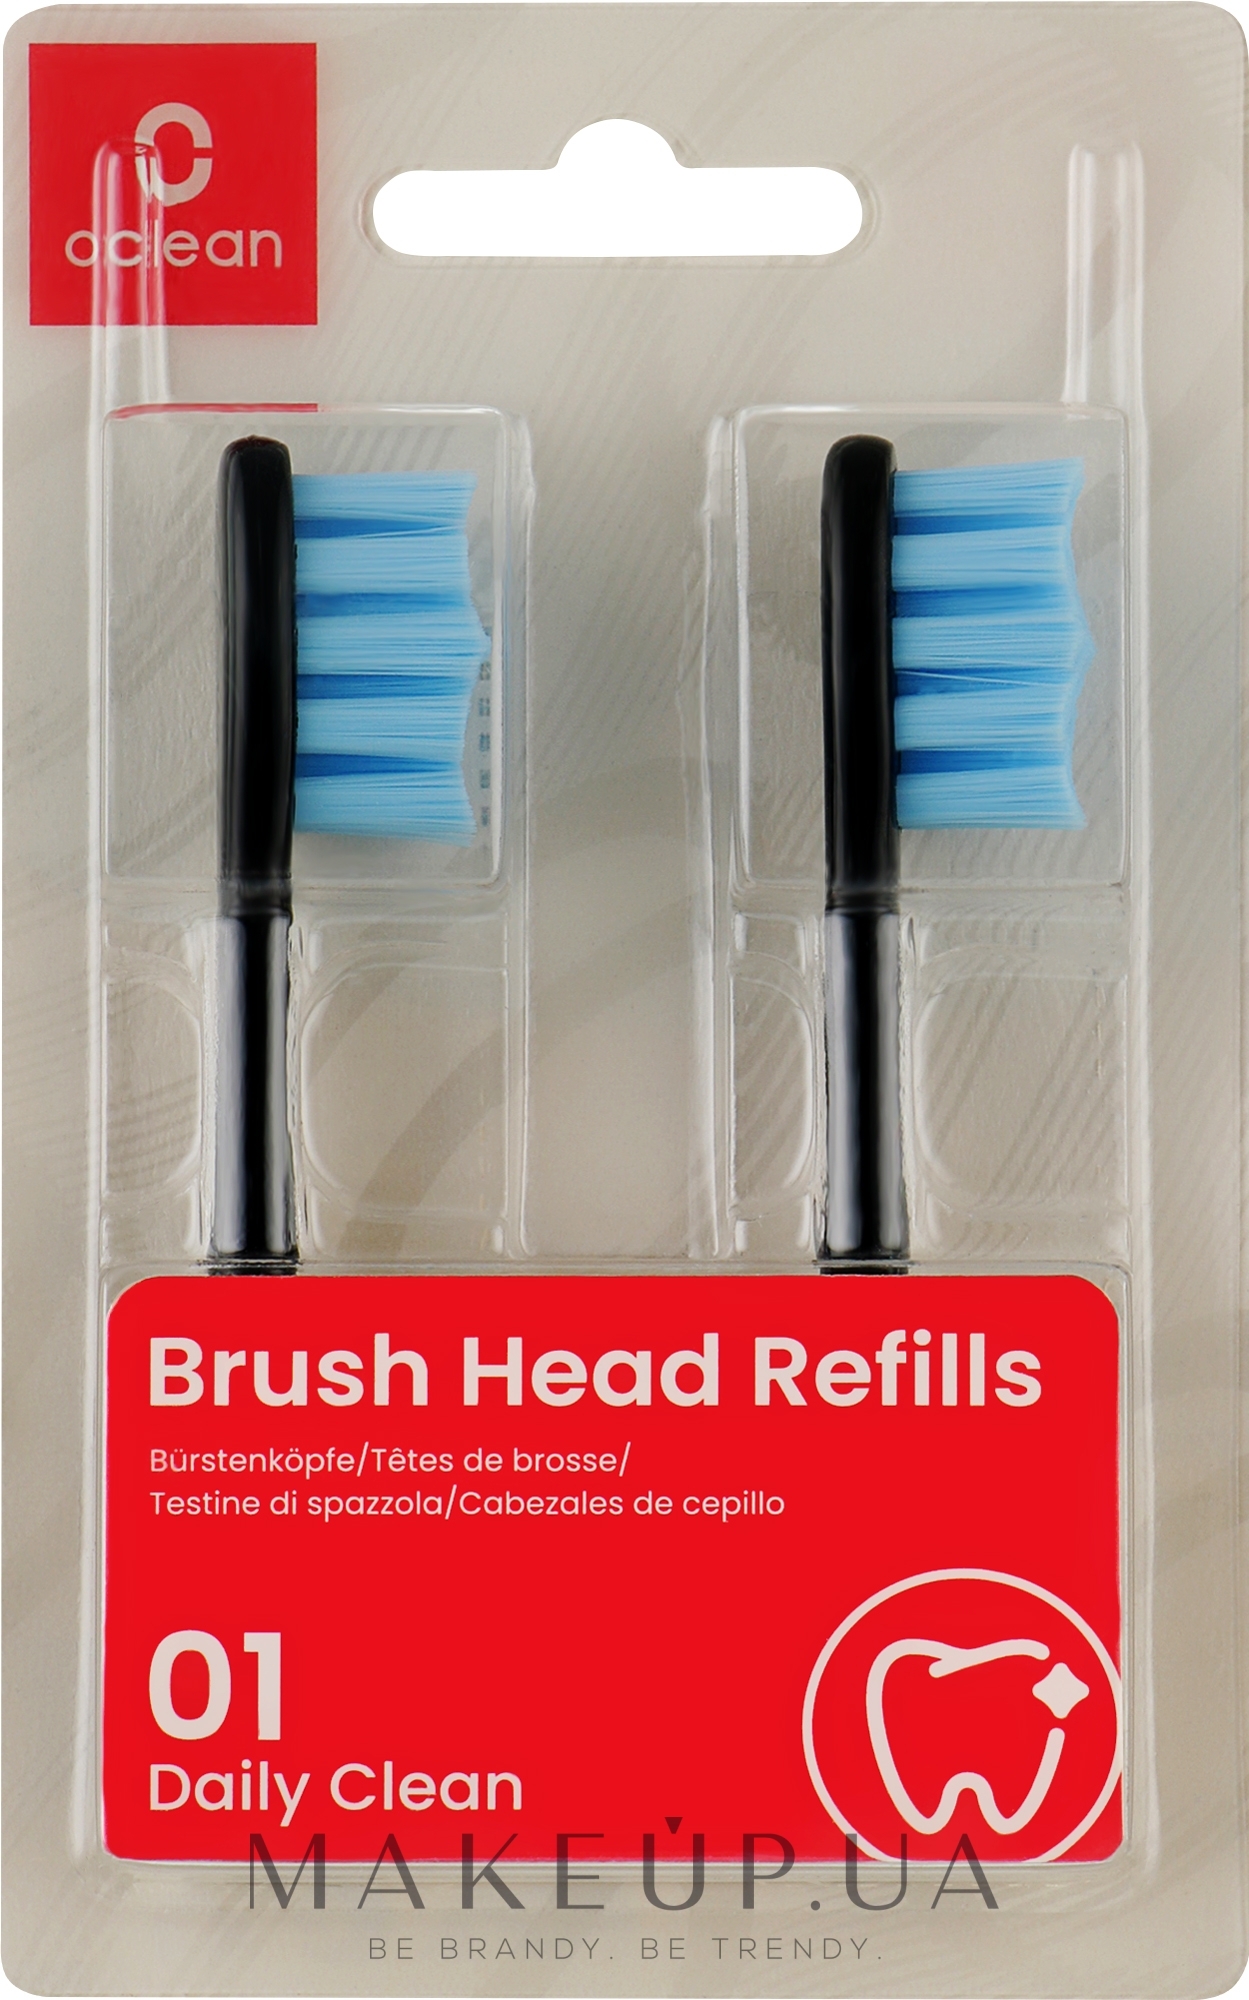 Насадки для електричної зубної щітки Standard Clean Soft, 2 шт., чорні - Oclean Brush Heads Refills — фото 2шт